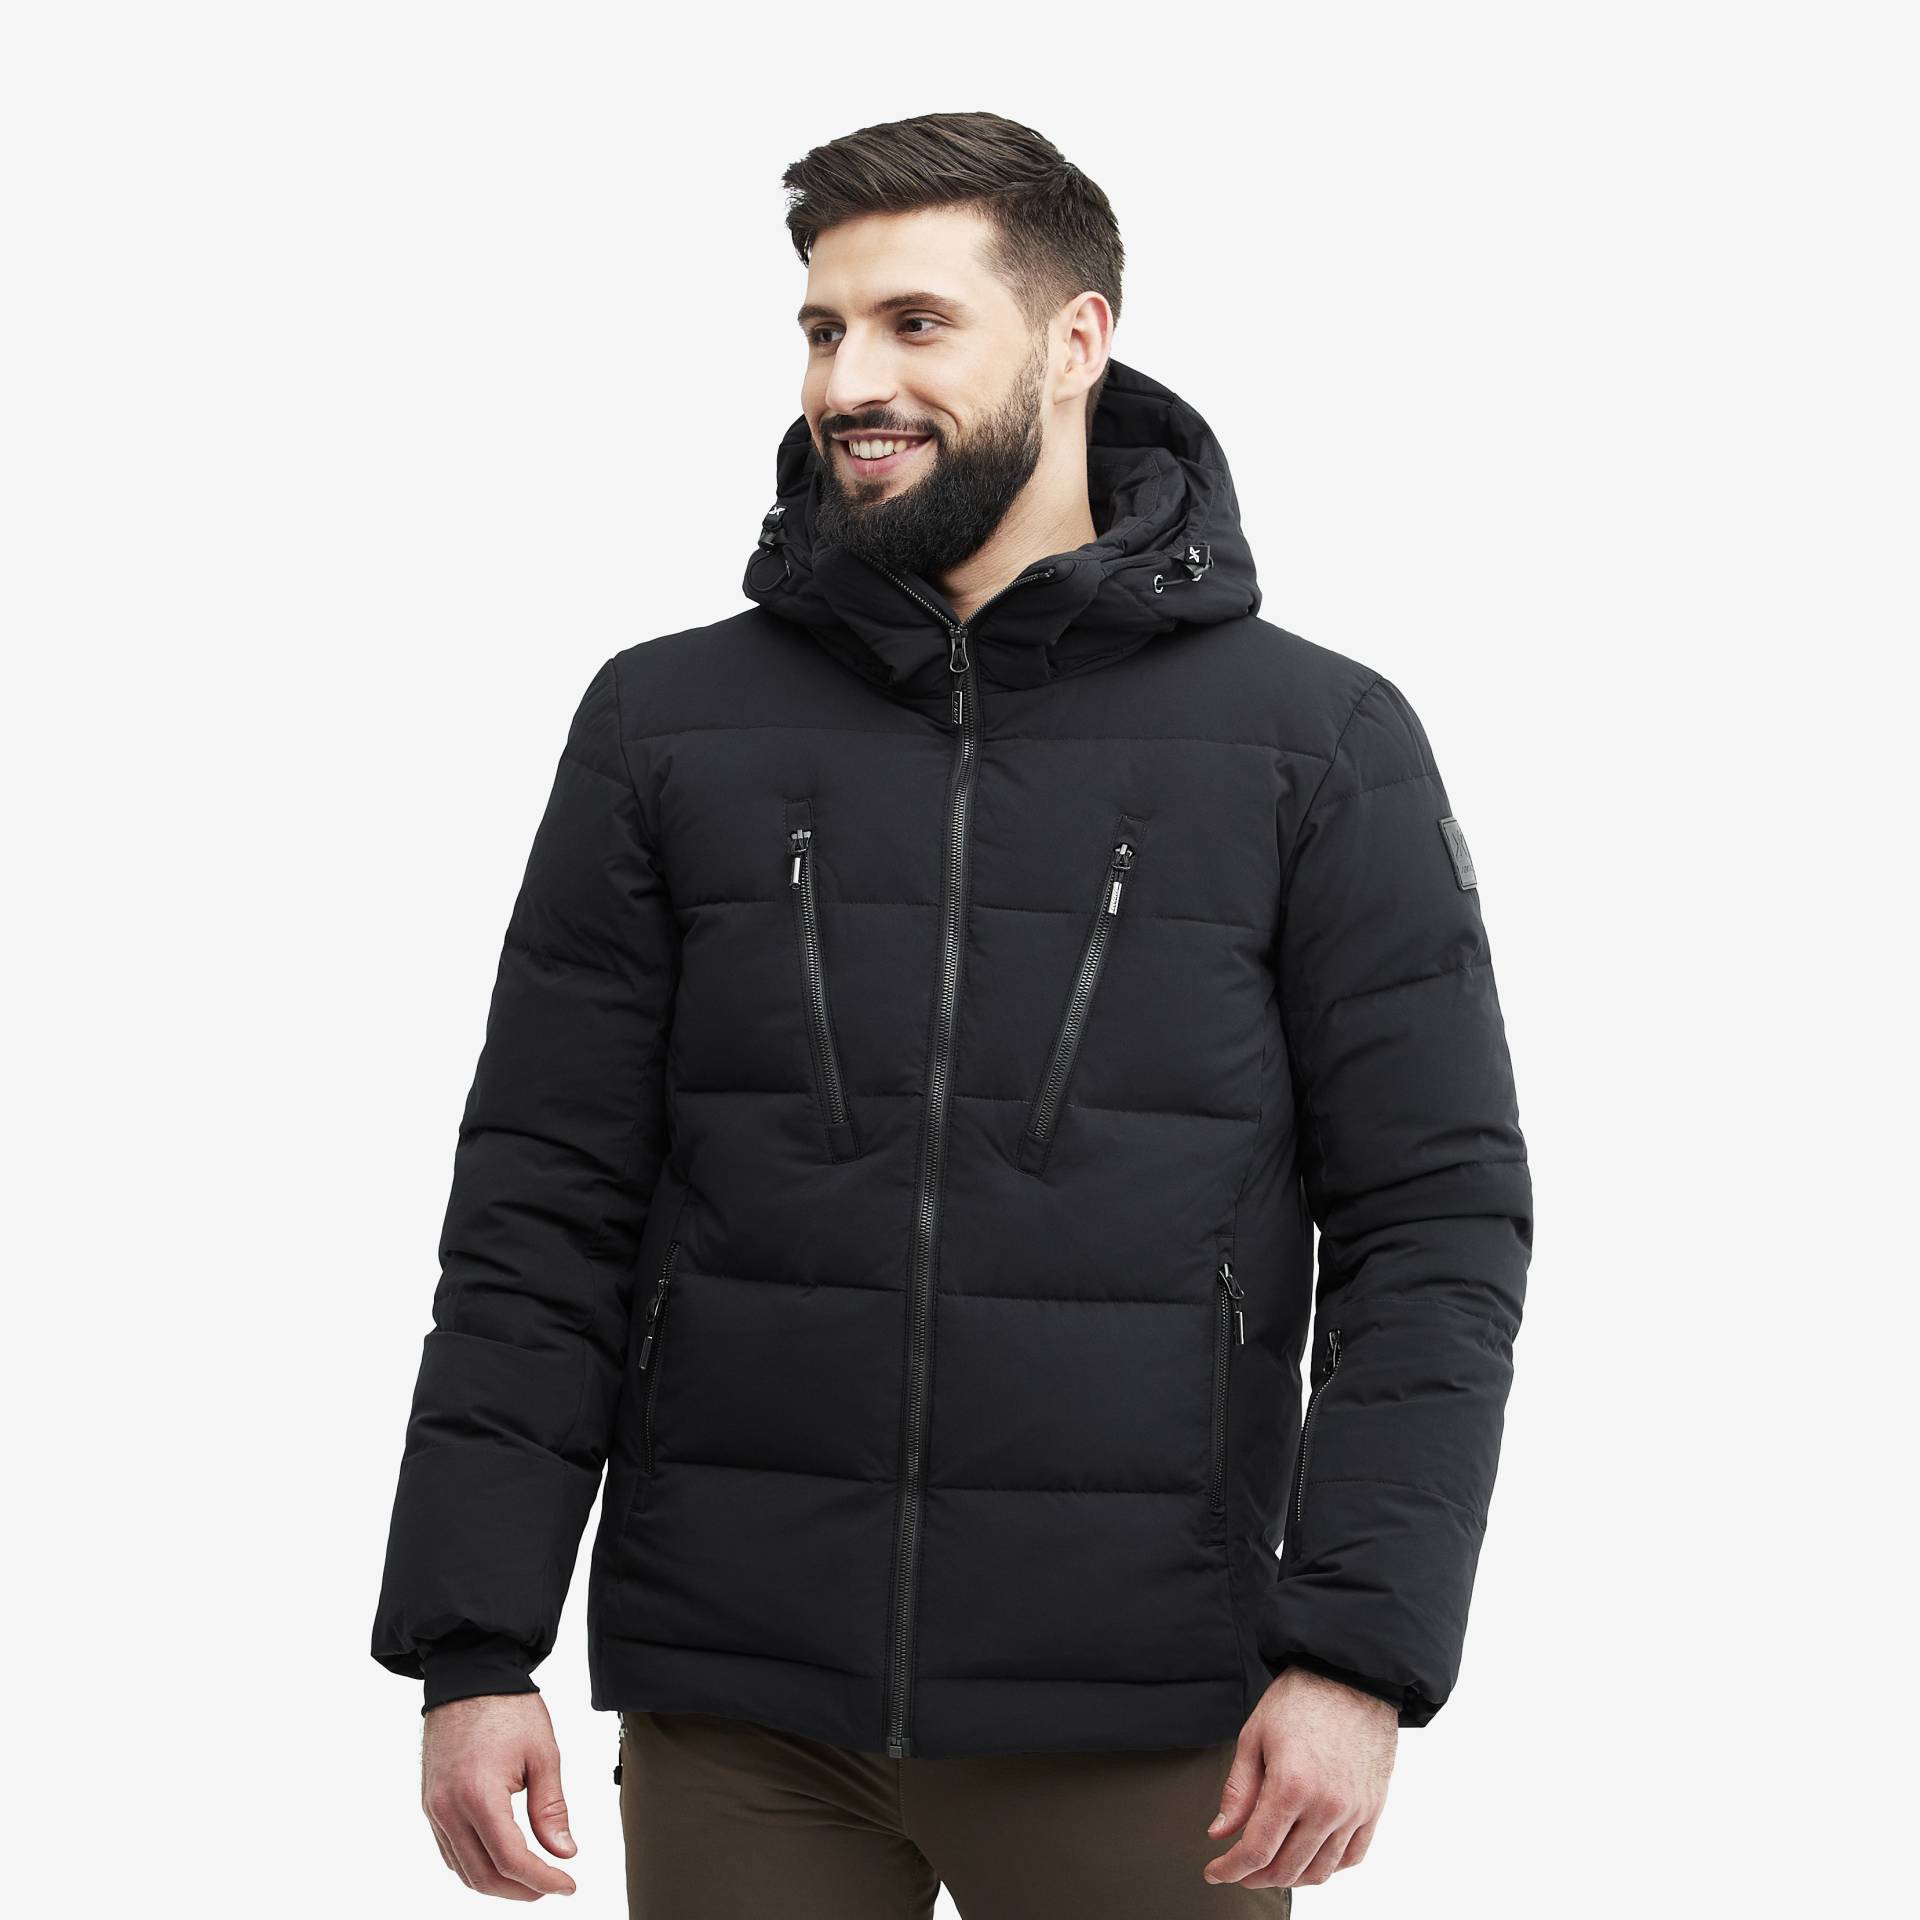 Igloo Jacket Herren Black, Größe:XL - Skijacken von RevolutionRace